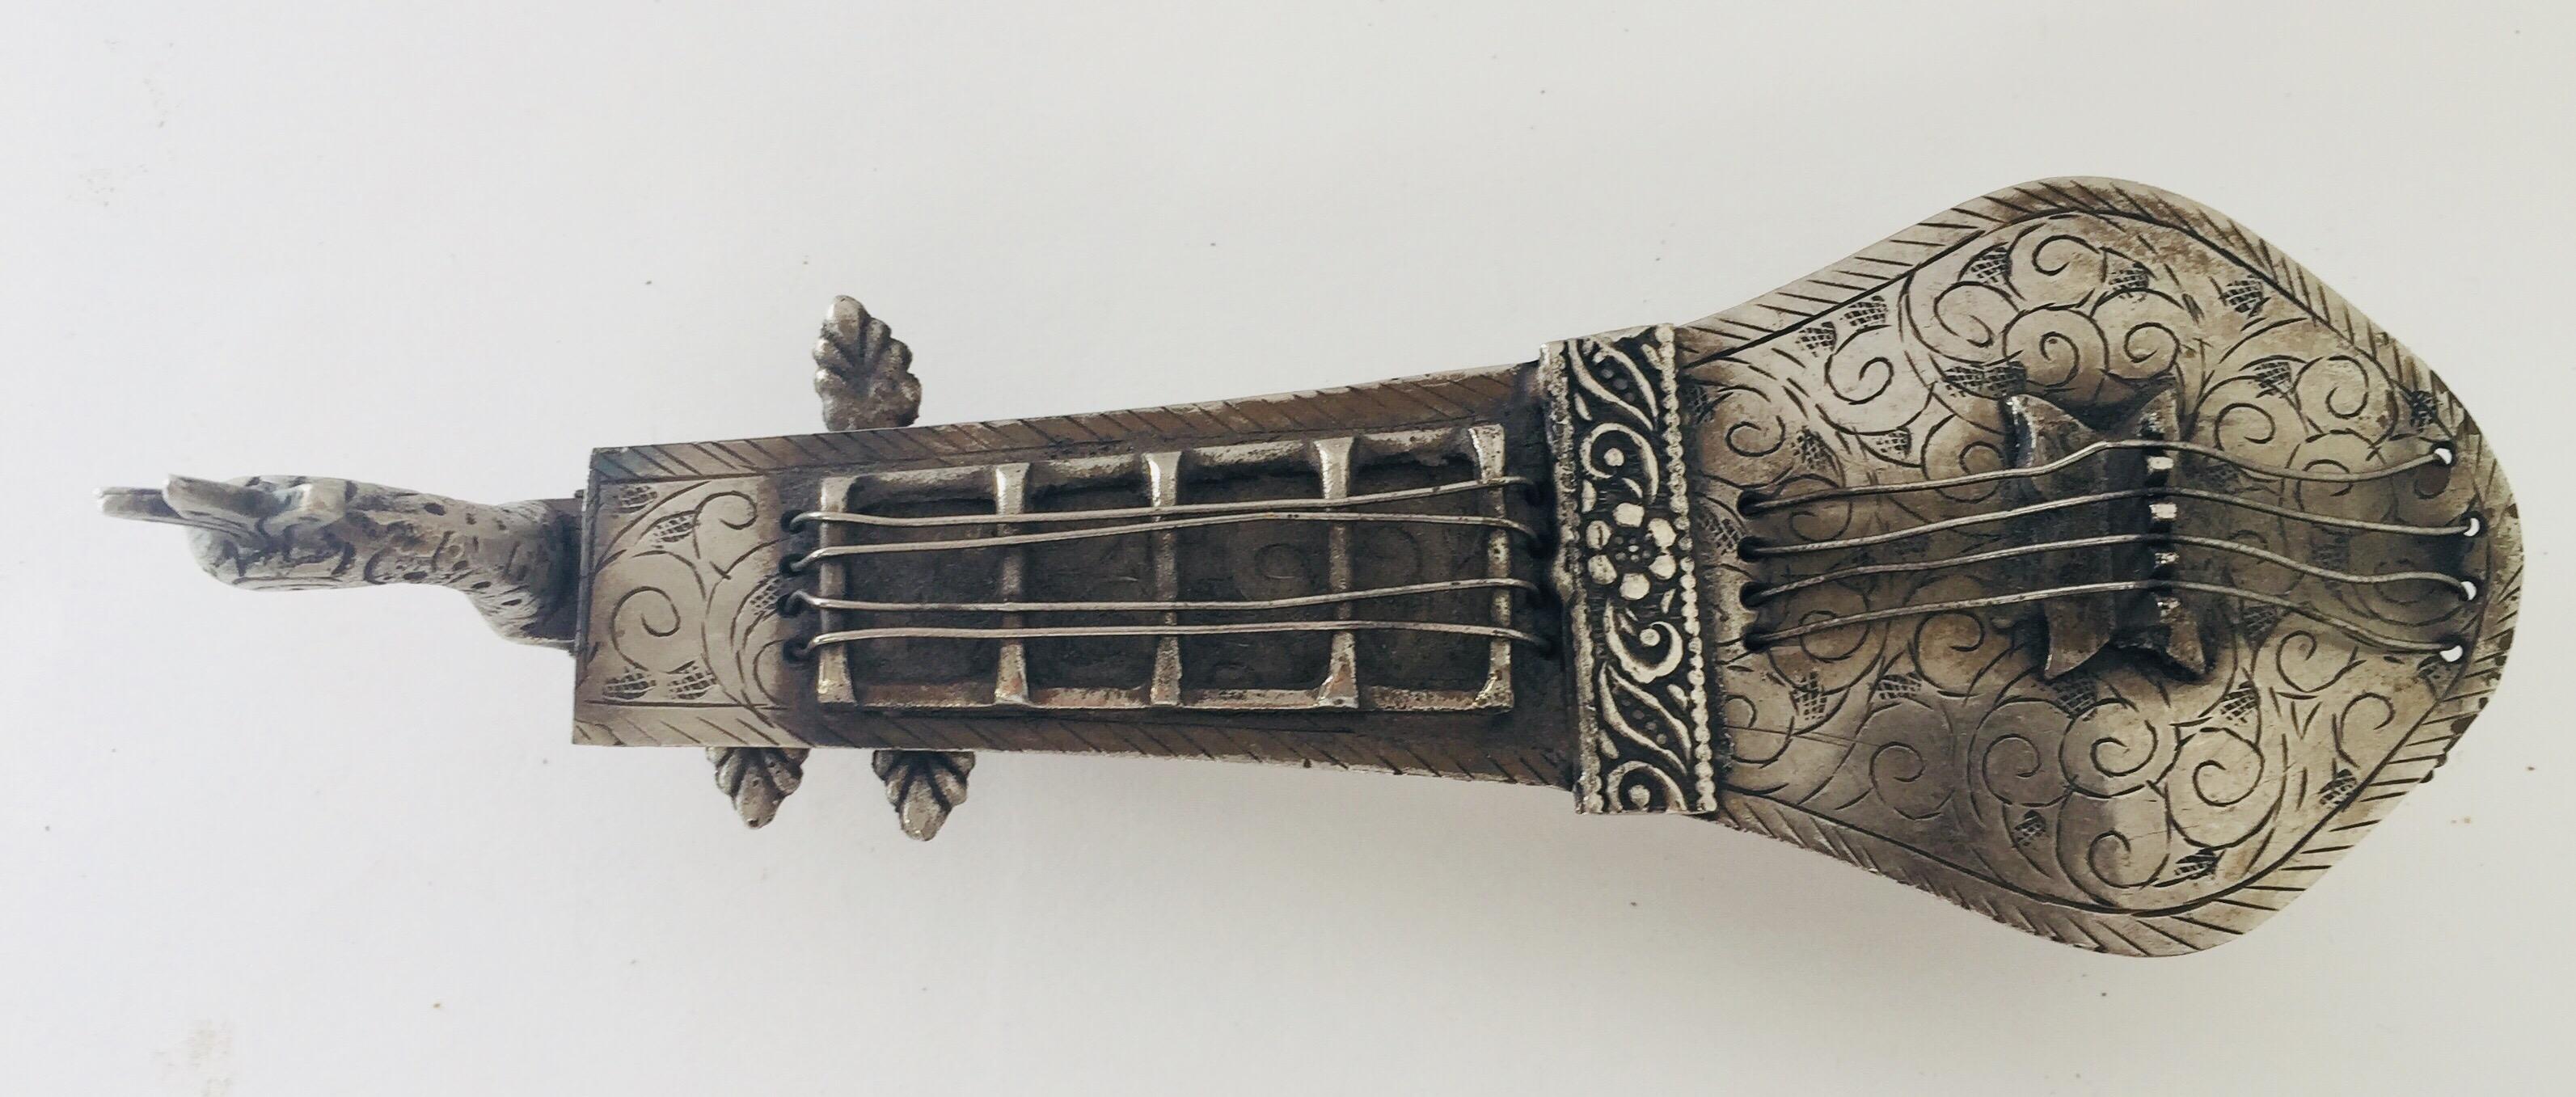 Porte-pipe à opium asiatique avec un motif de tête de paon en filigrane et en forme d'instrument à cordes indien Veena.
Alliage métallique argenté, patiné ouvert pour contenir la pipe.
Porte-pipe à opium décoratif de collection, très beau travail